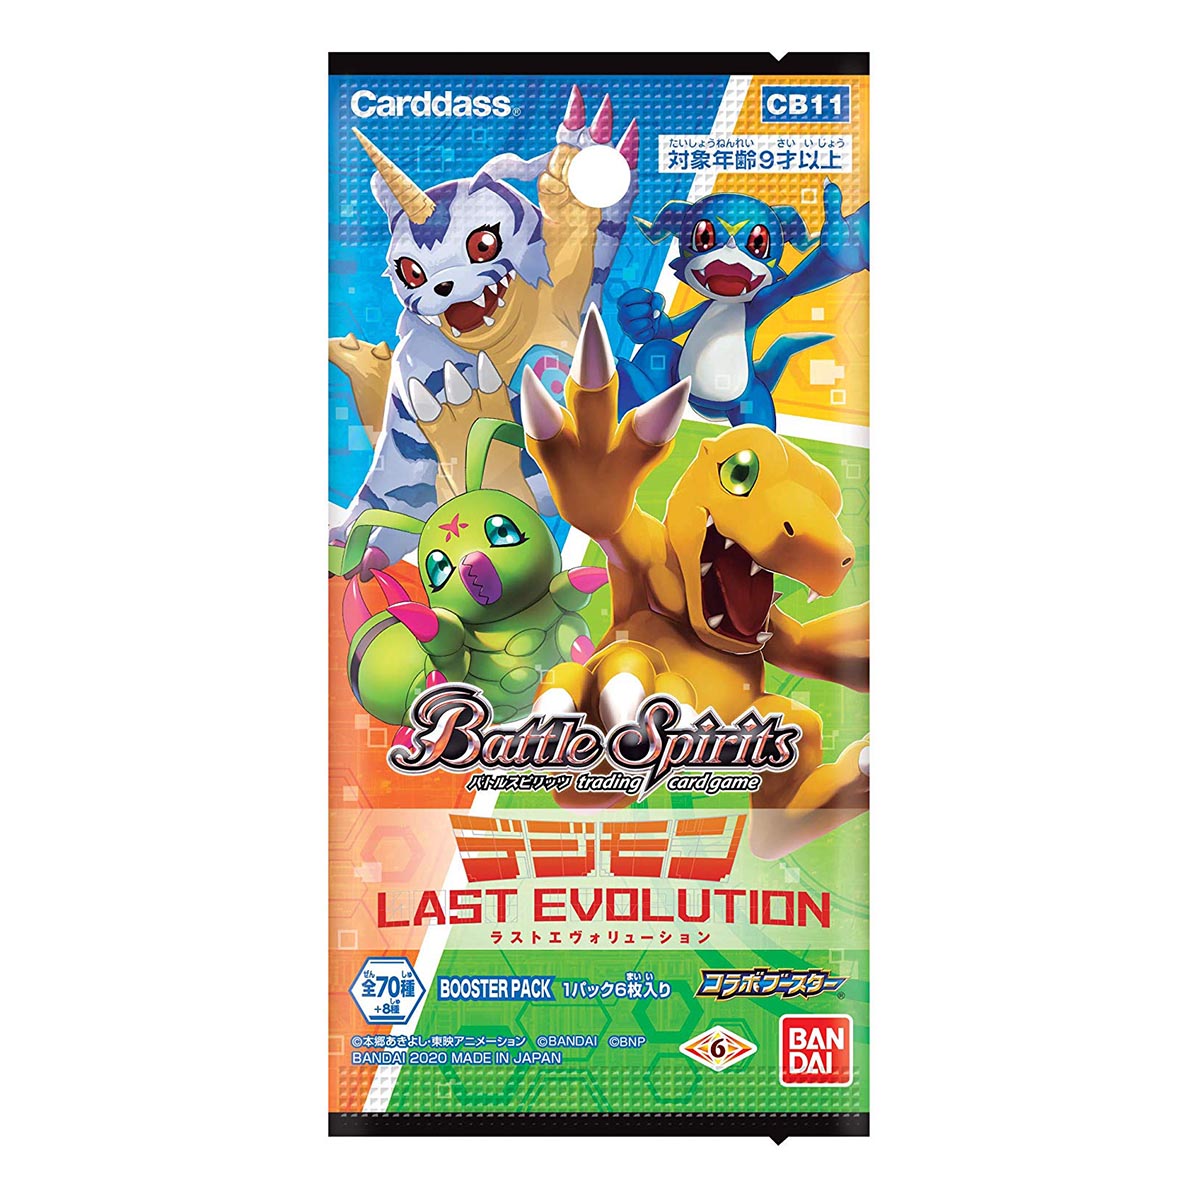 バトルスピリッツ コラボブースター『デジモン LAST EVOLUTION ブースターパック』20パック入りBOX-001